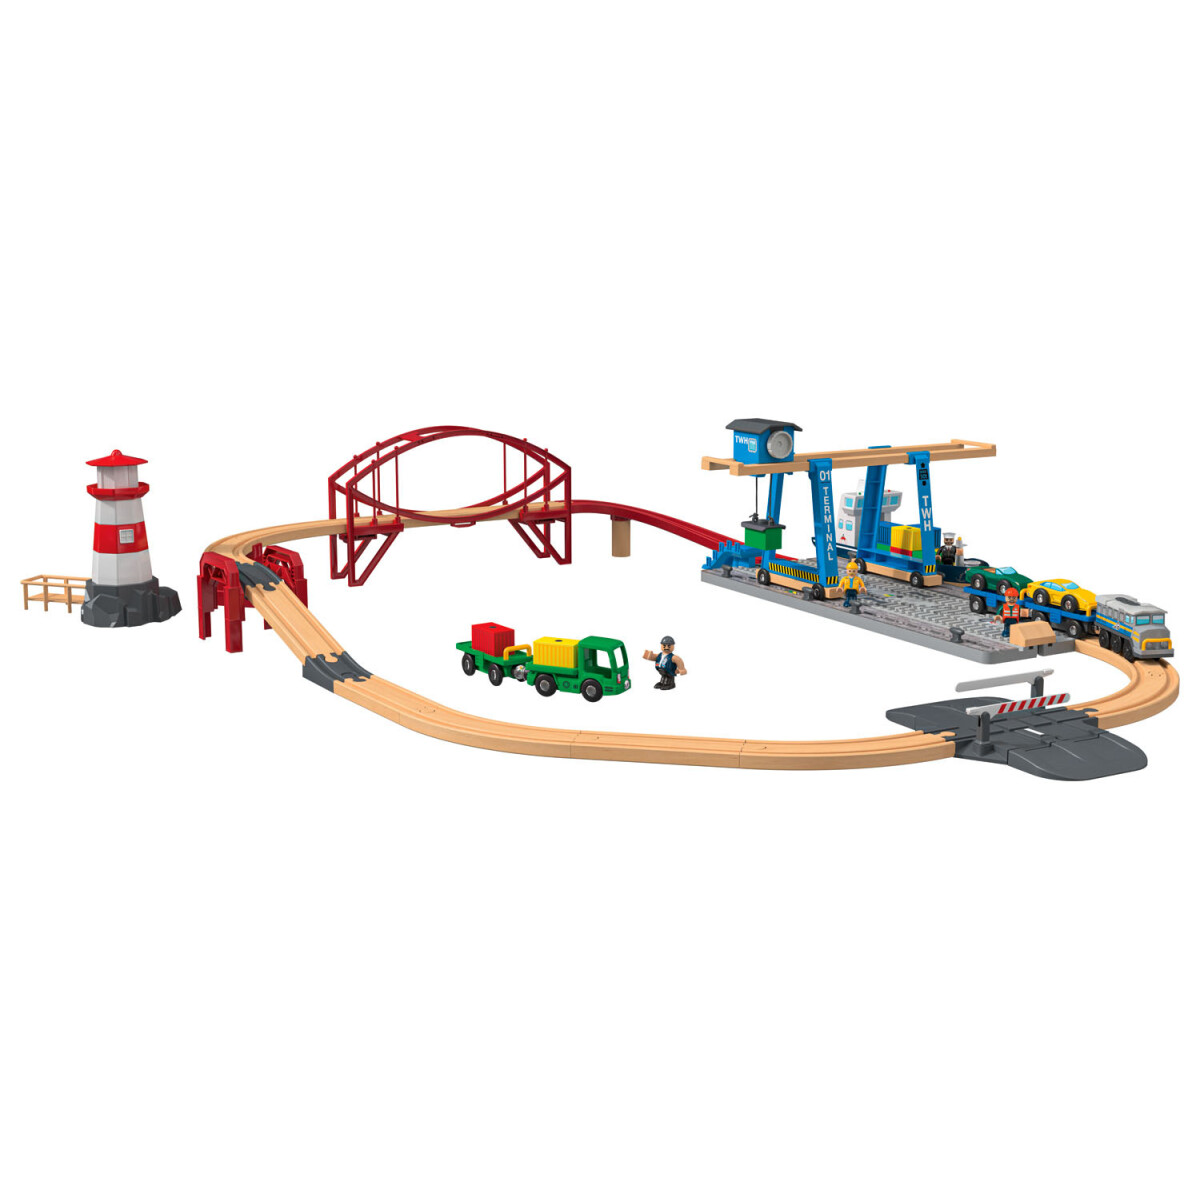 Playtive Containerhafen Eisenbahn-Set, aus Echtholz - B-Ware sehr gut,  34,99 €